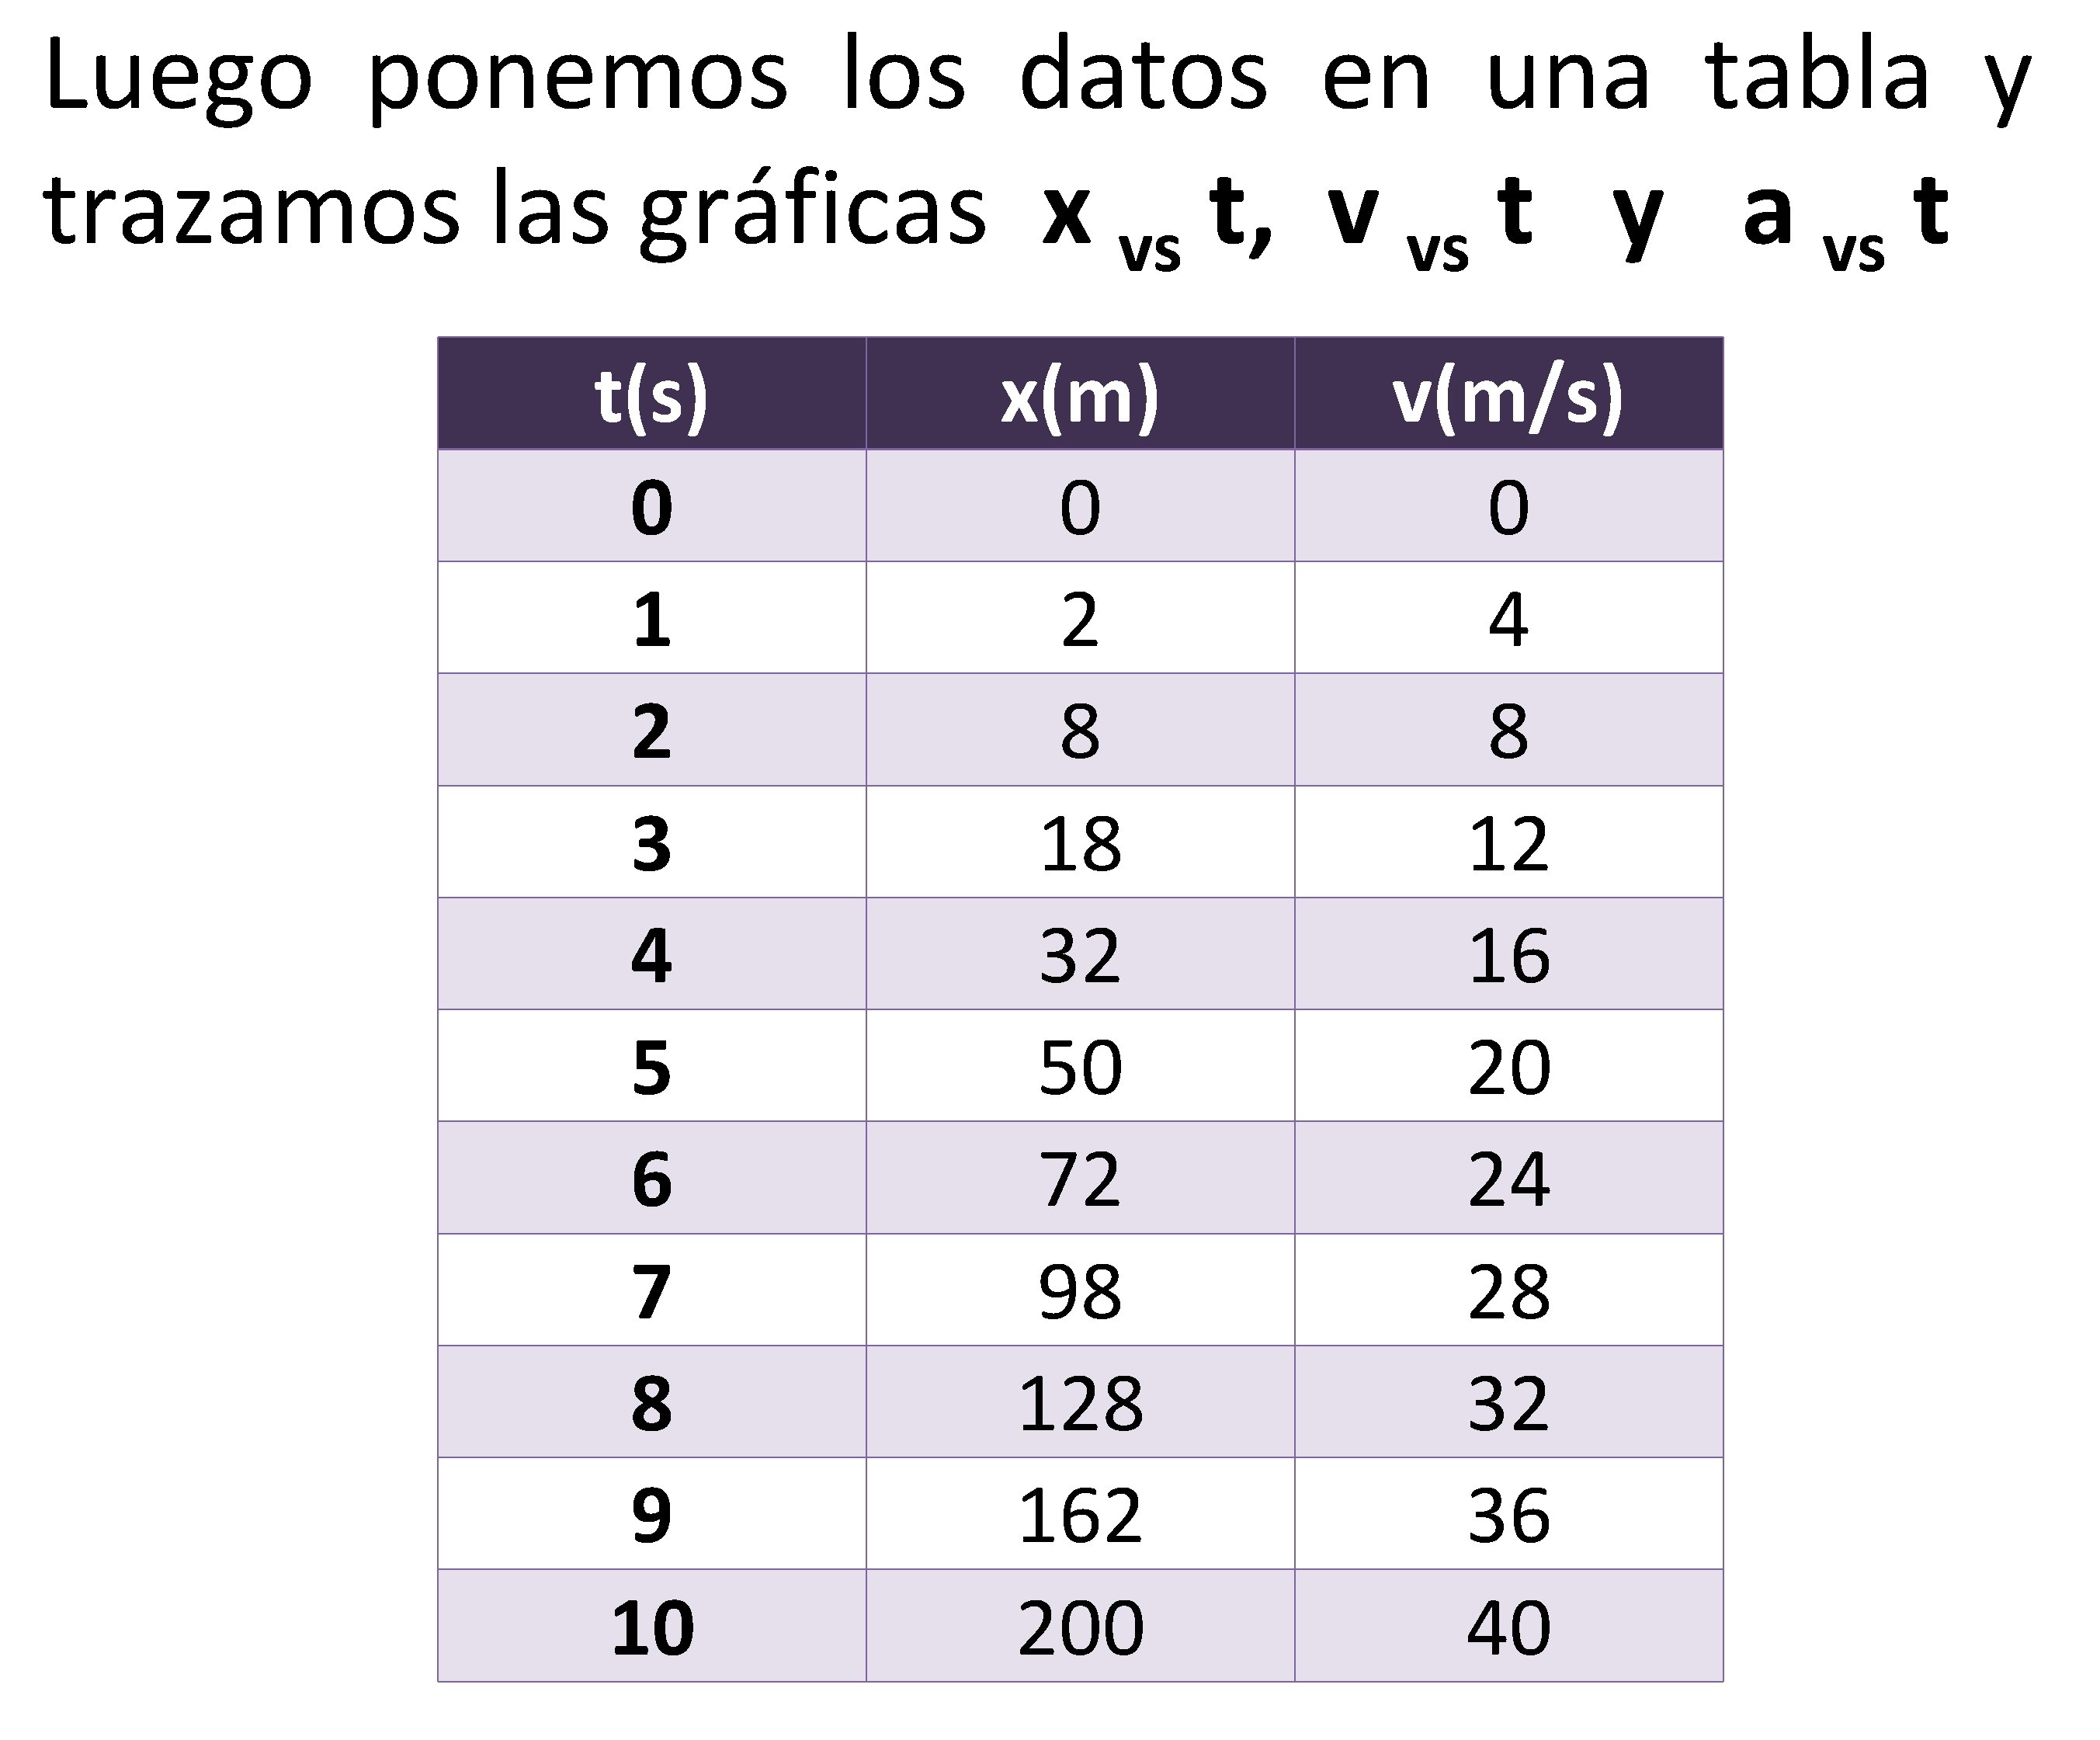 Luego ponemos los datos en una tabla y trazamos las gráficas x vs t,